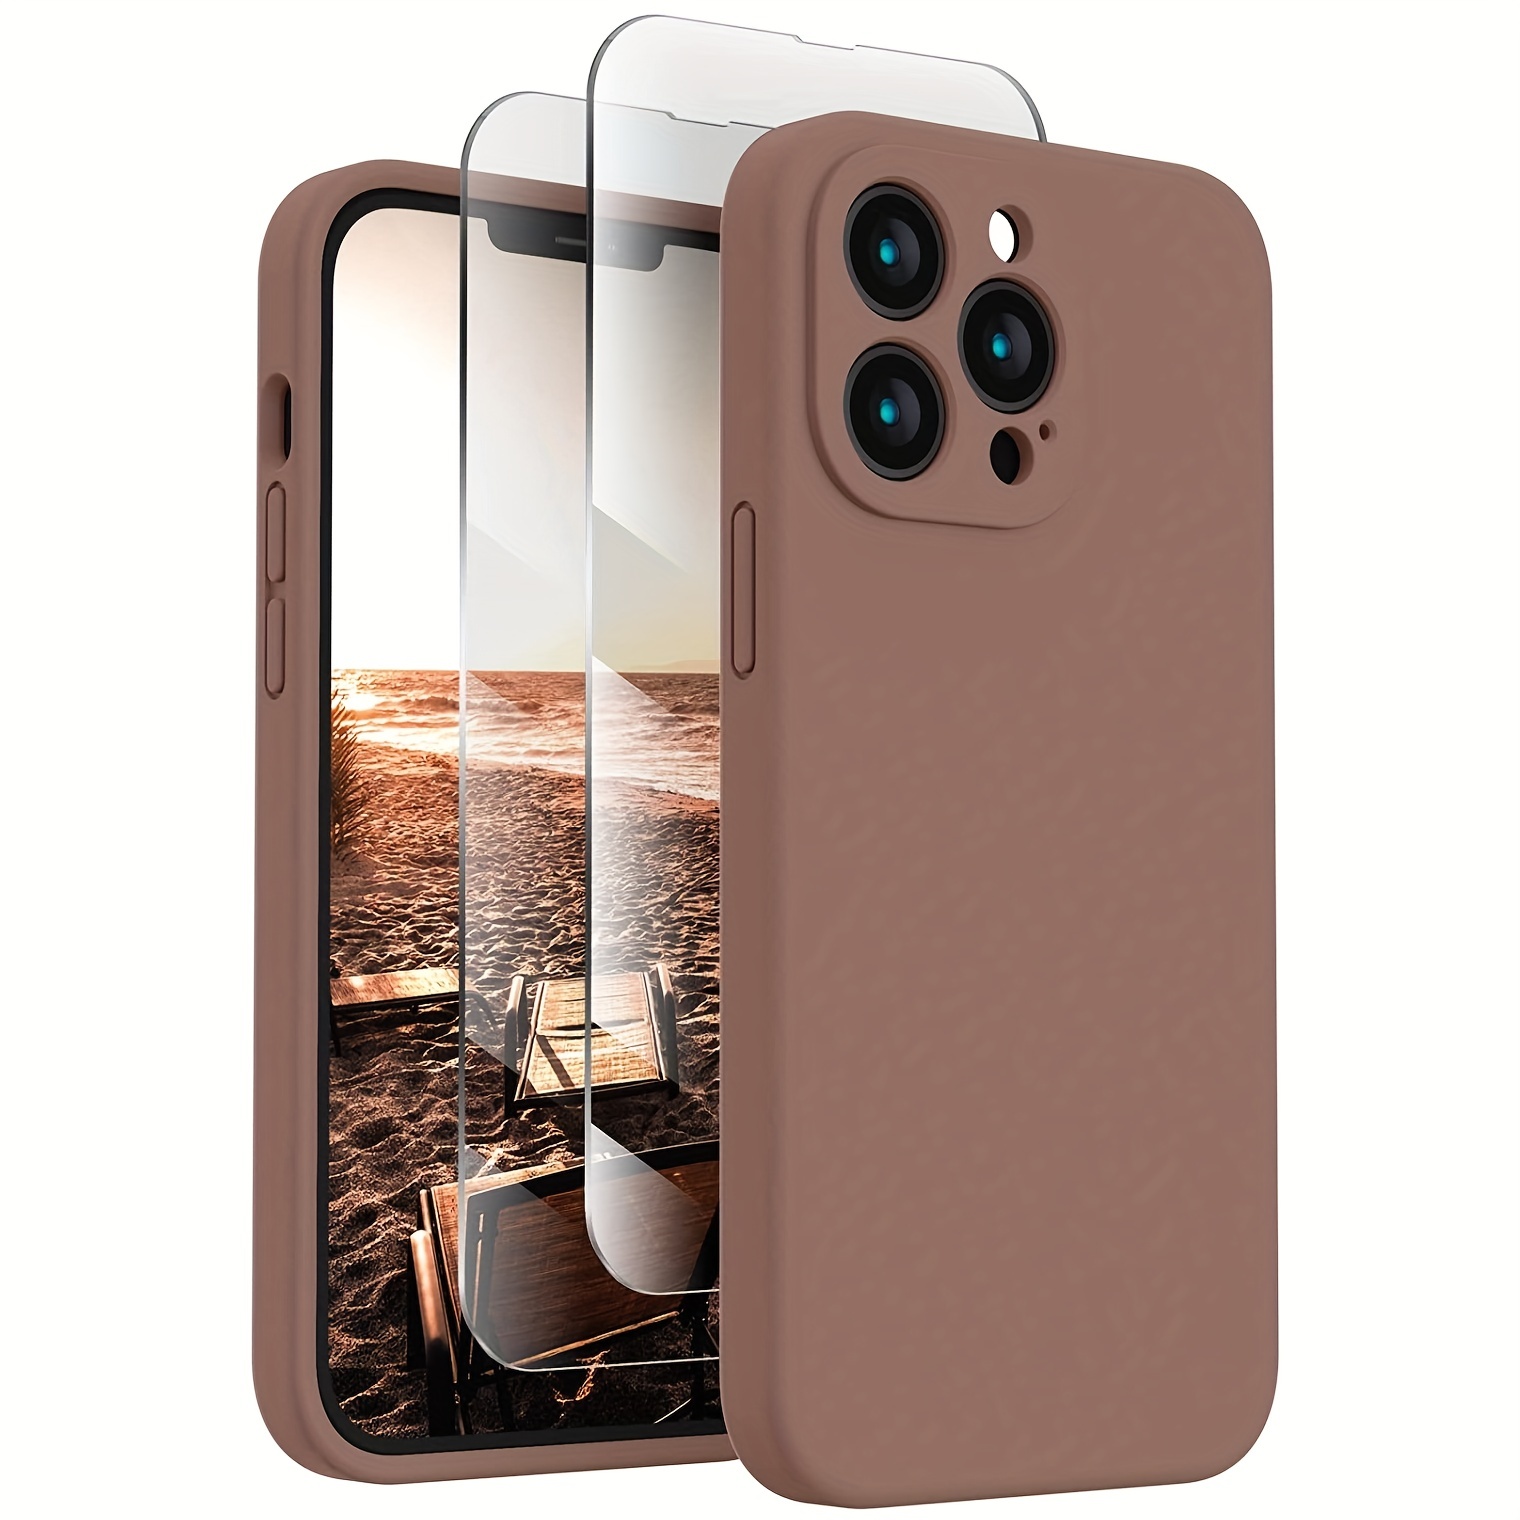 Funda de silicona rosa para iPhone 13 Pro Max, compatible con iPhone 13 Pro  Max, funda protectora de cuerpo completo con forro de microfibra, 6.7